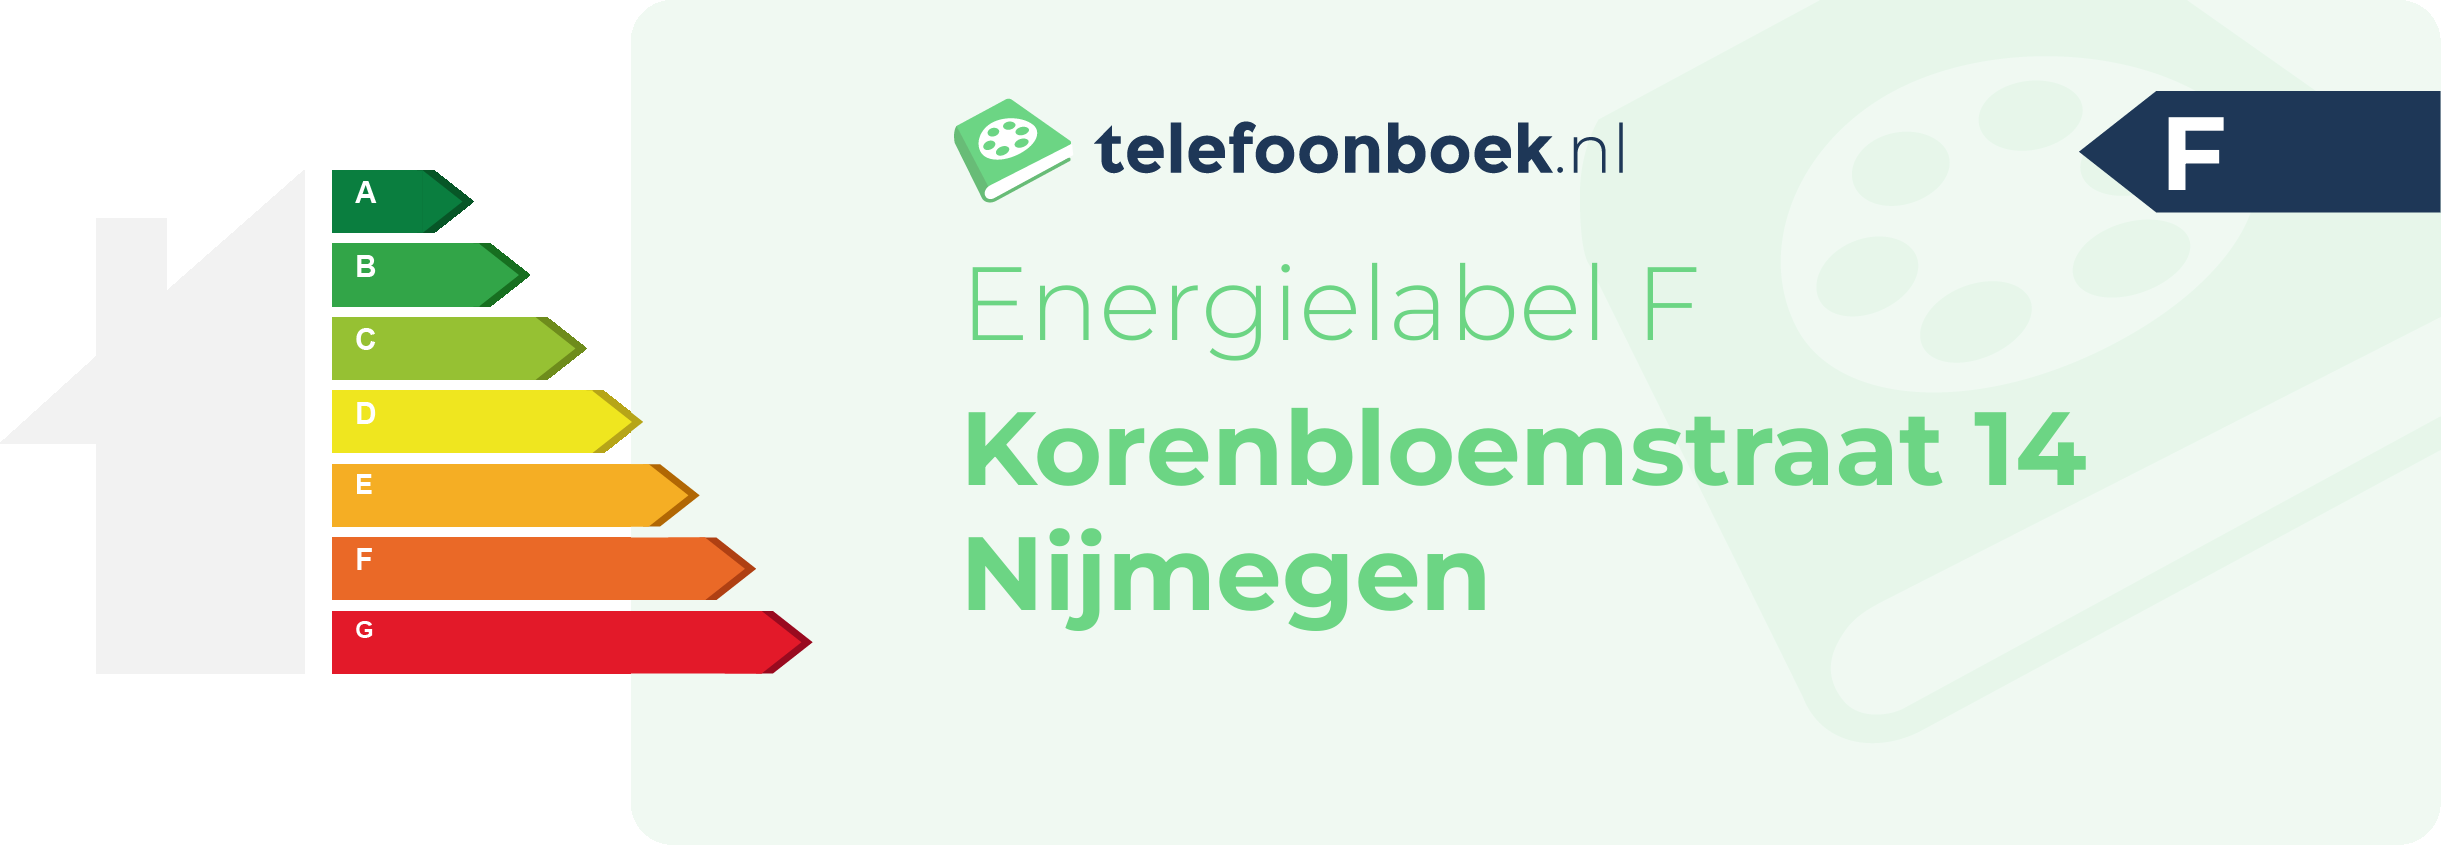 Energielabel Korenbloemstraat 14 Nijmegen